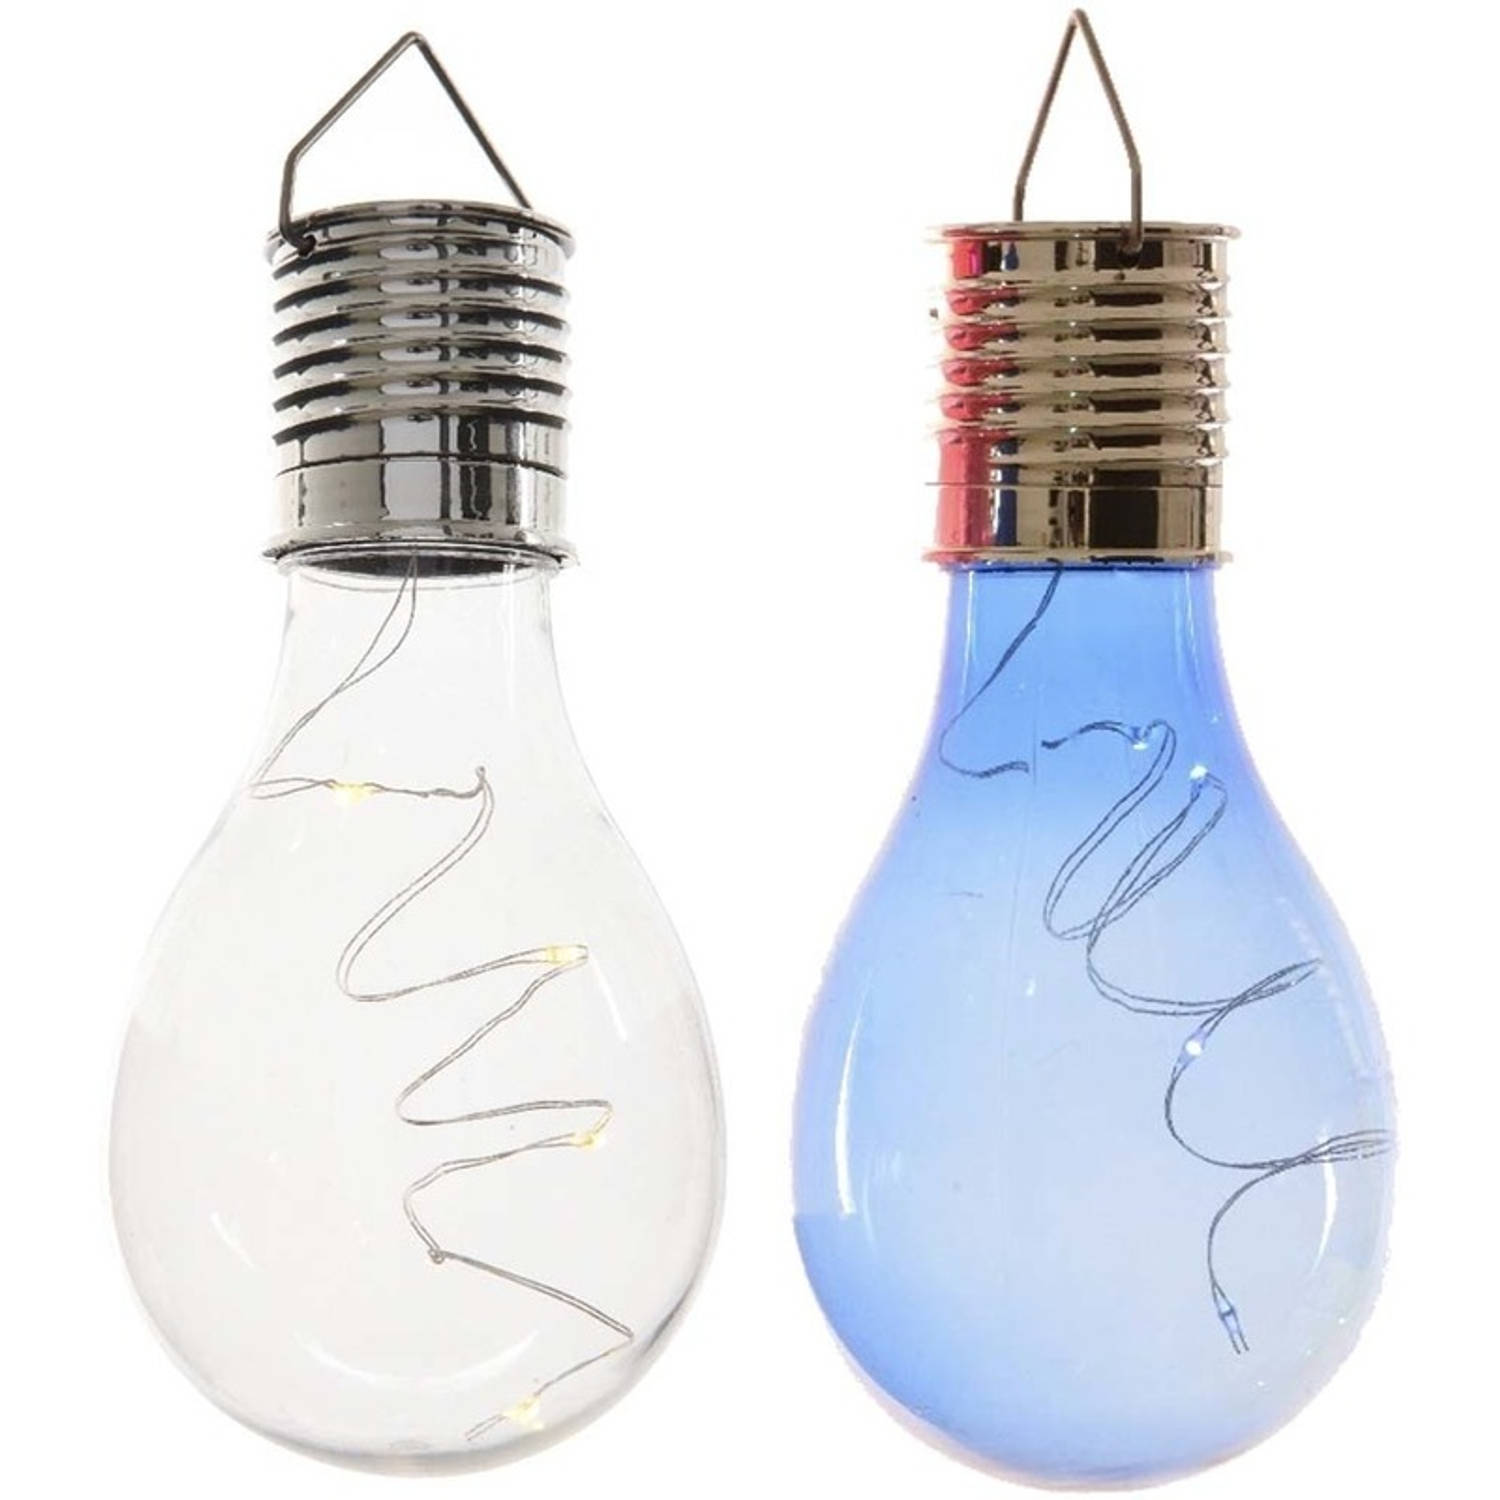 2x Buitenlampen/tuinlampen lampbolletjes/peertjes 14 cm transparant/blauw - Buitenverlichting